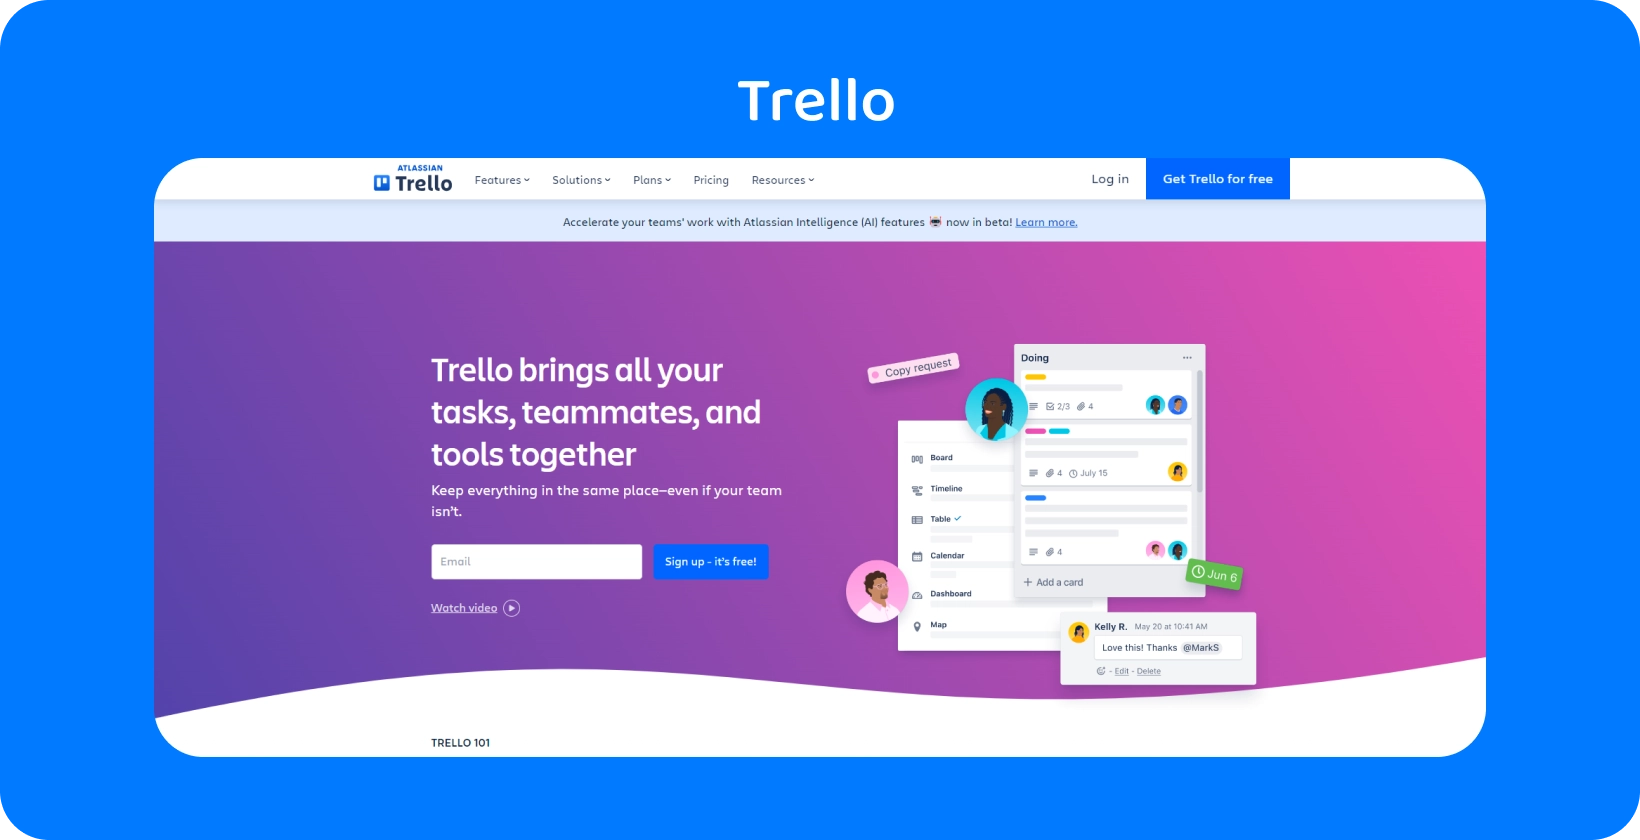 Een Trello interface die de taakorganisatie laat zien, perfect voor advocaten om de dossiers en samenwerkingen te beheren.